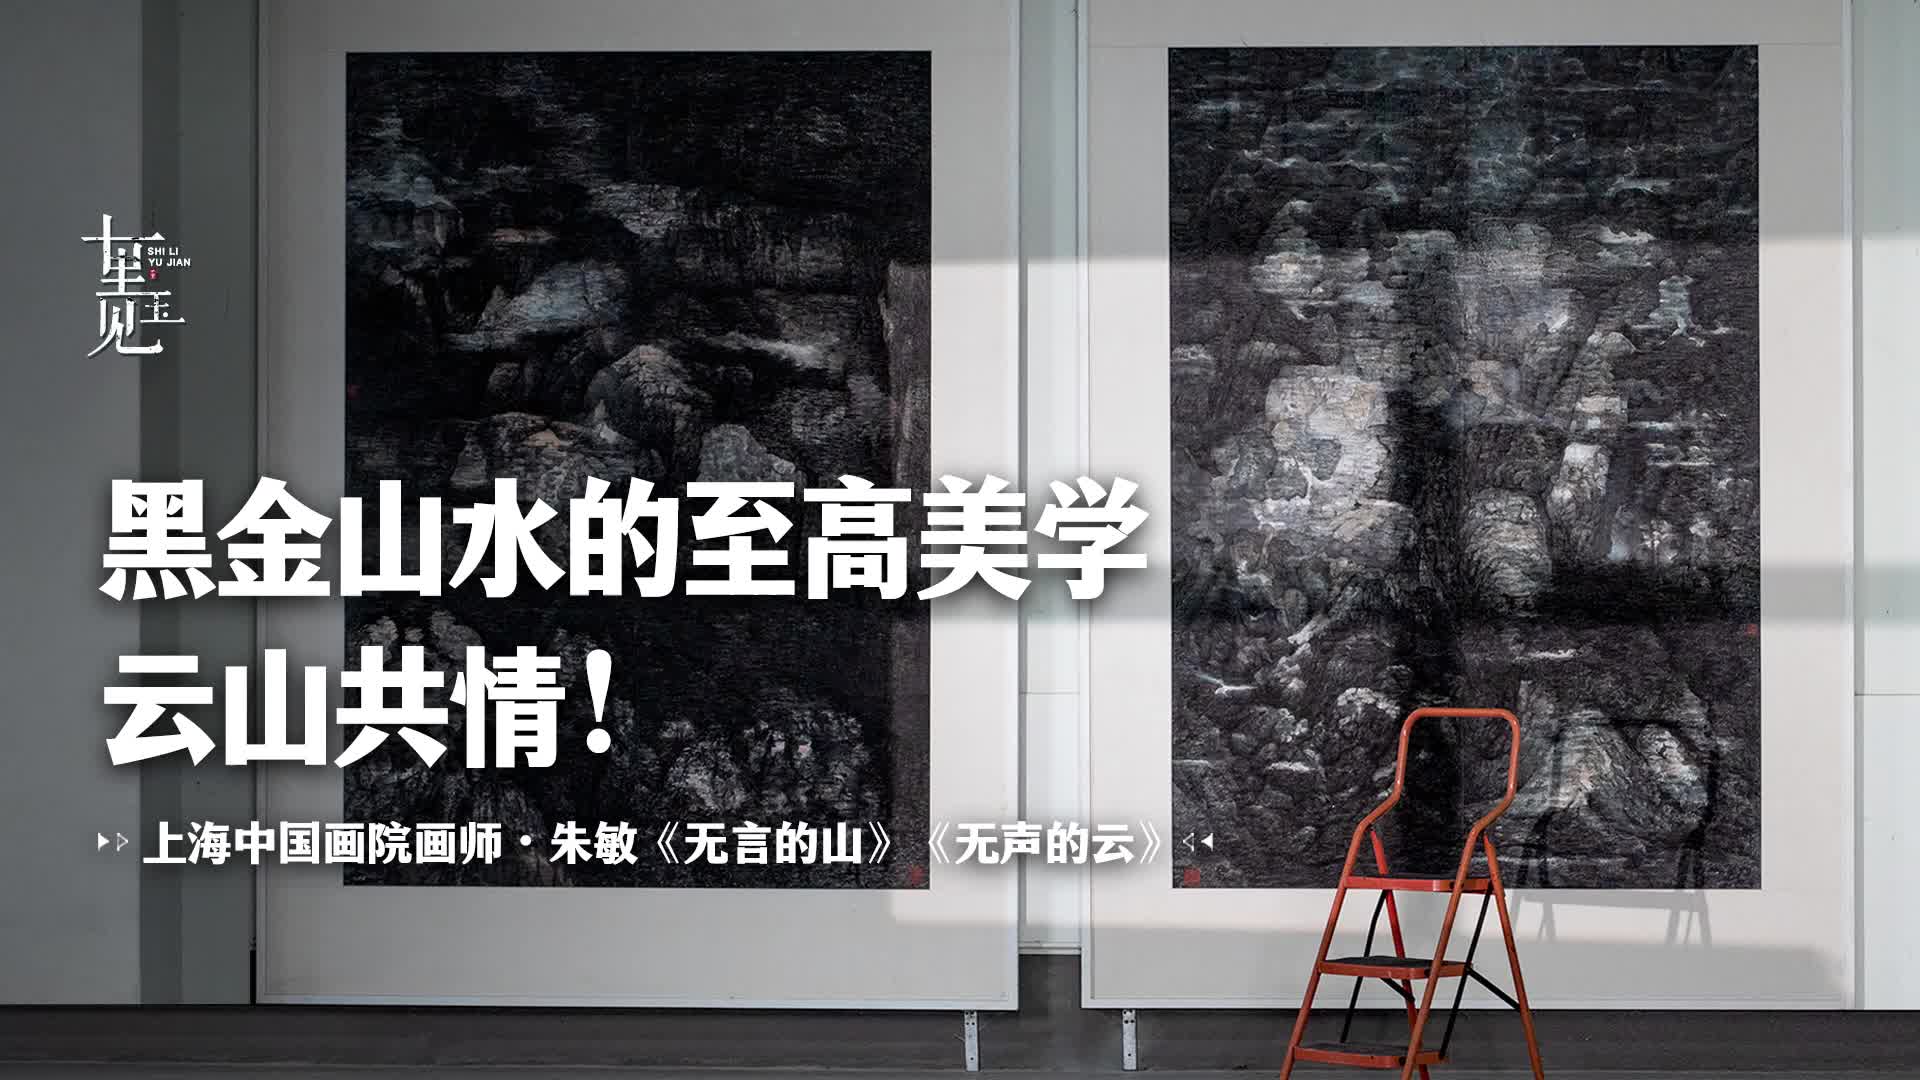 中国画：无声无言却胜一切，山水画家朱敏的修养尽在画中